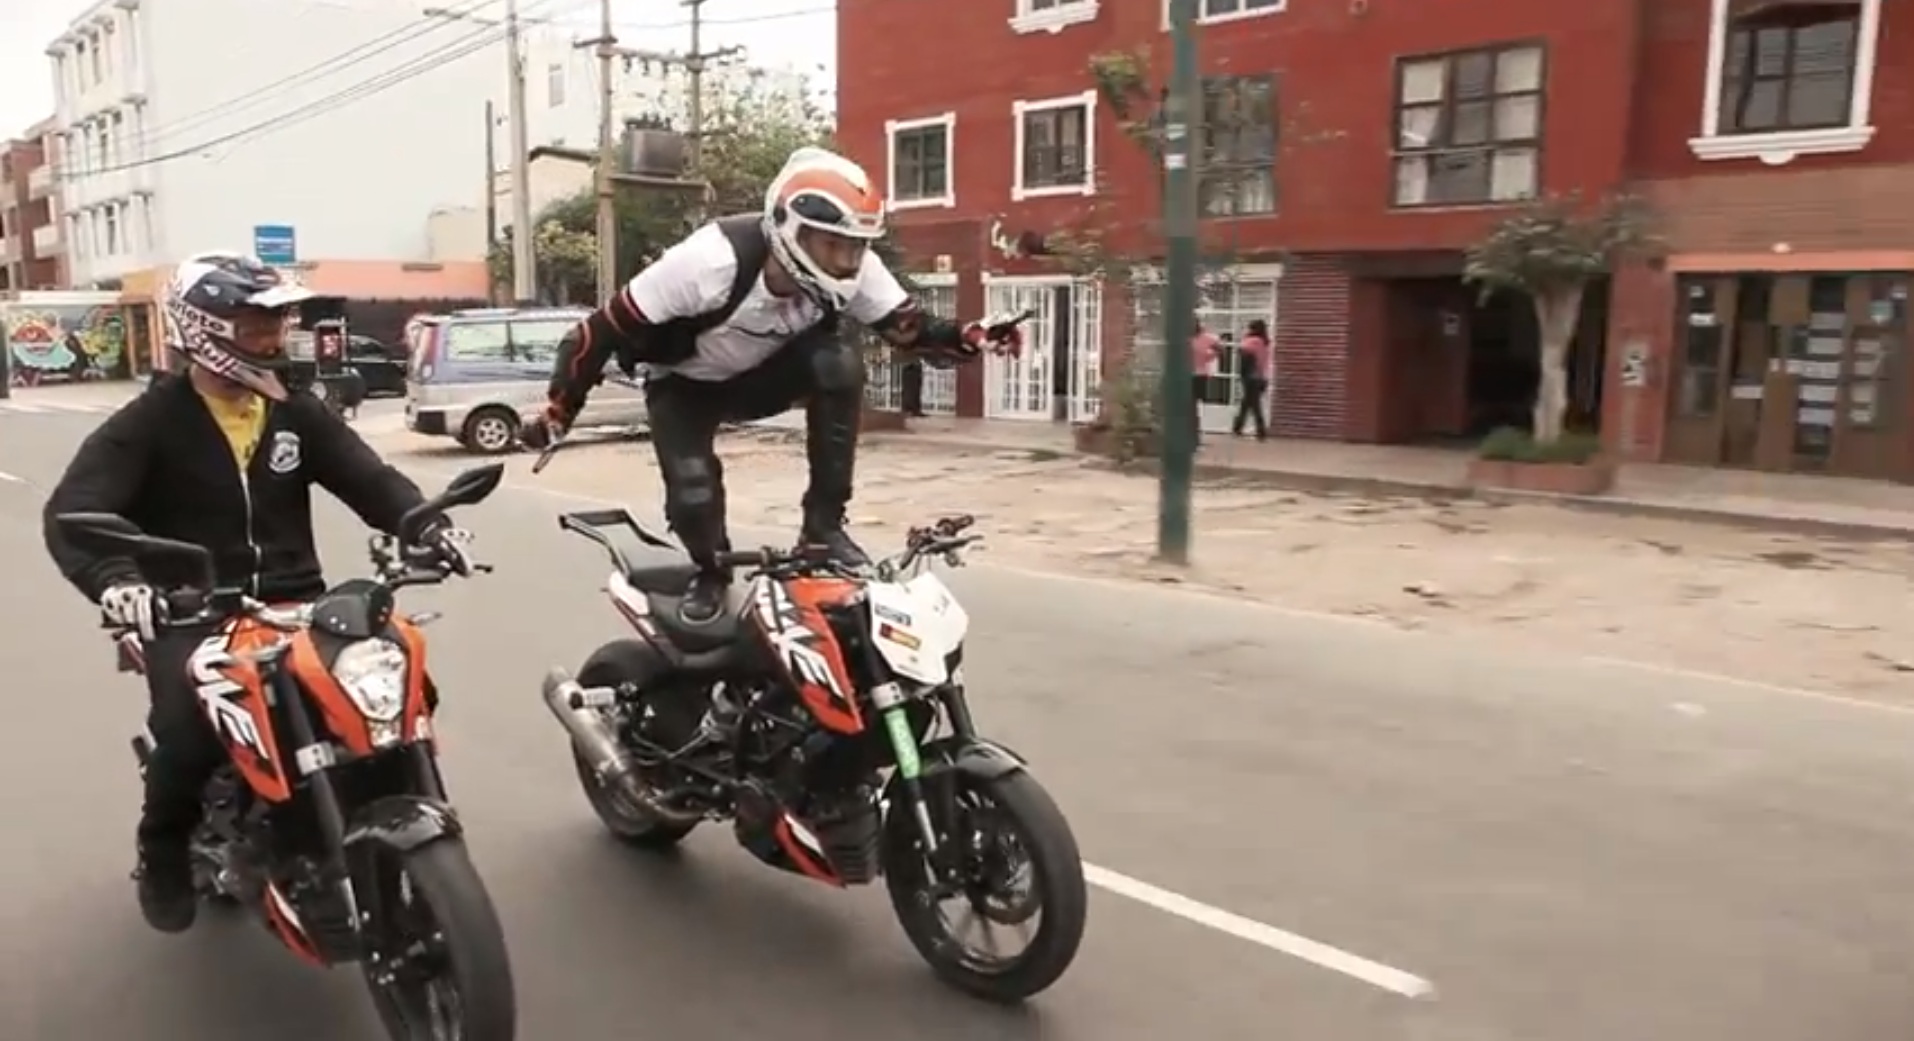 Rok Bagoros氏 南米でバイクスタントをして回る動画 現実逃避